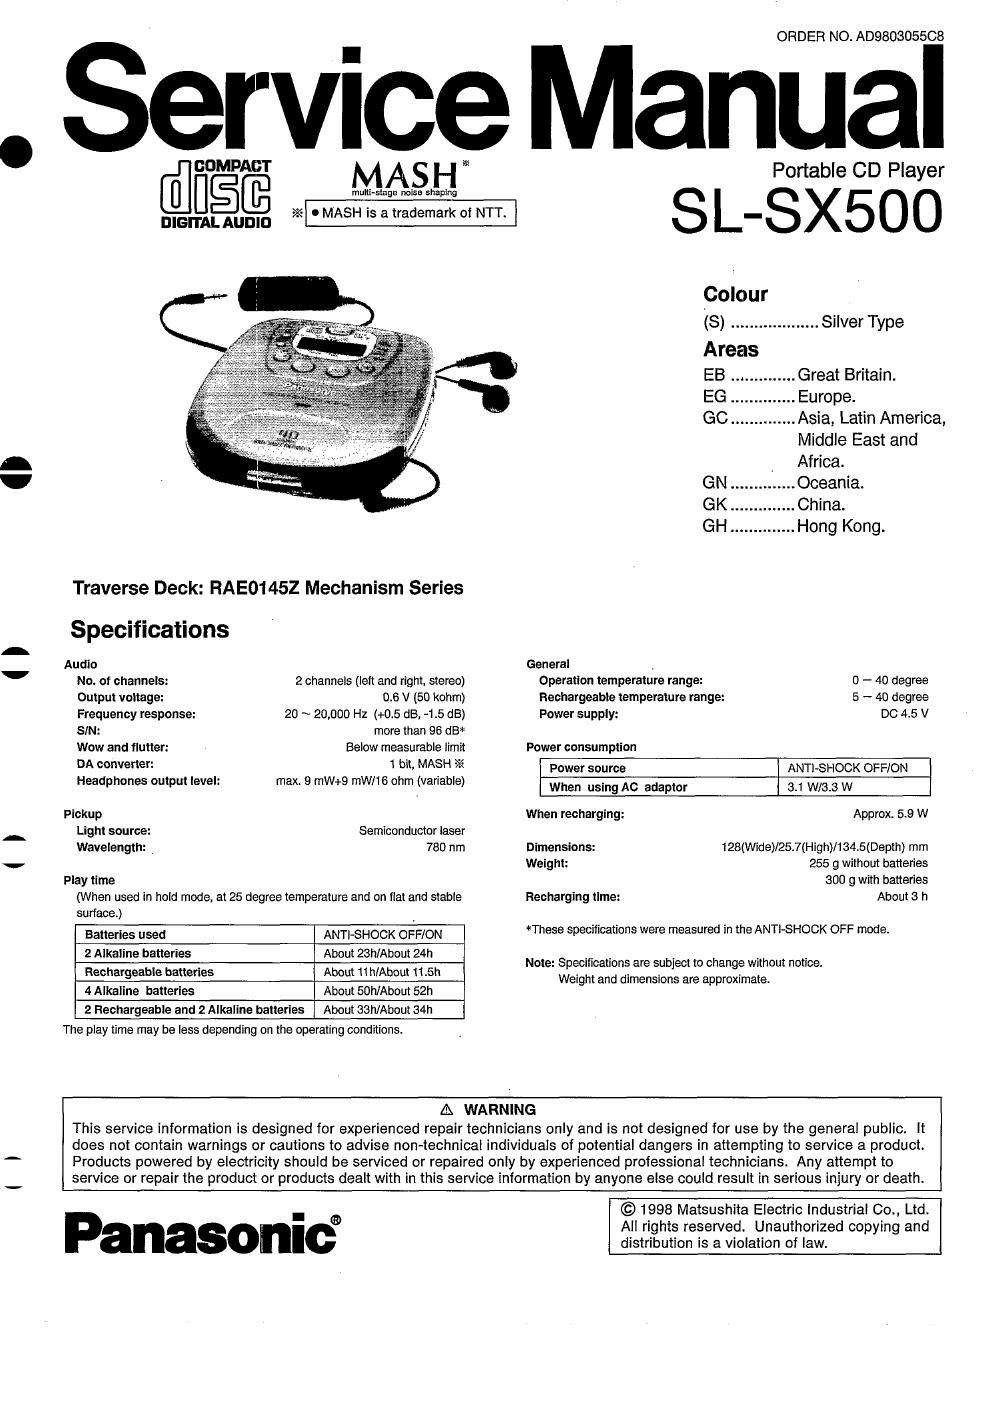 panasonic sl sx 500 compact